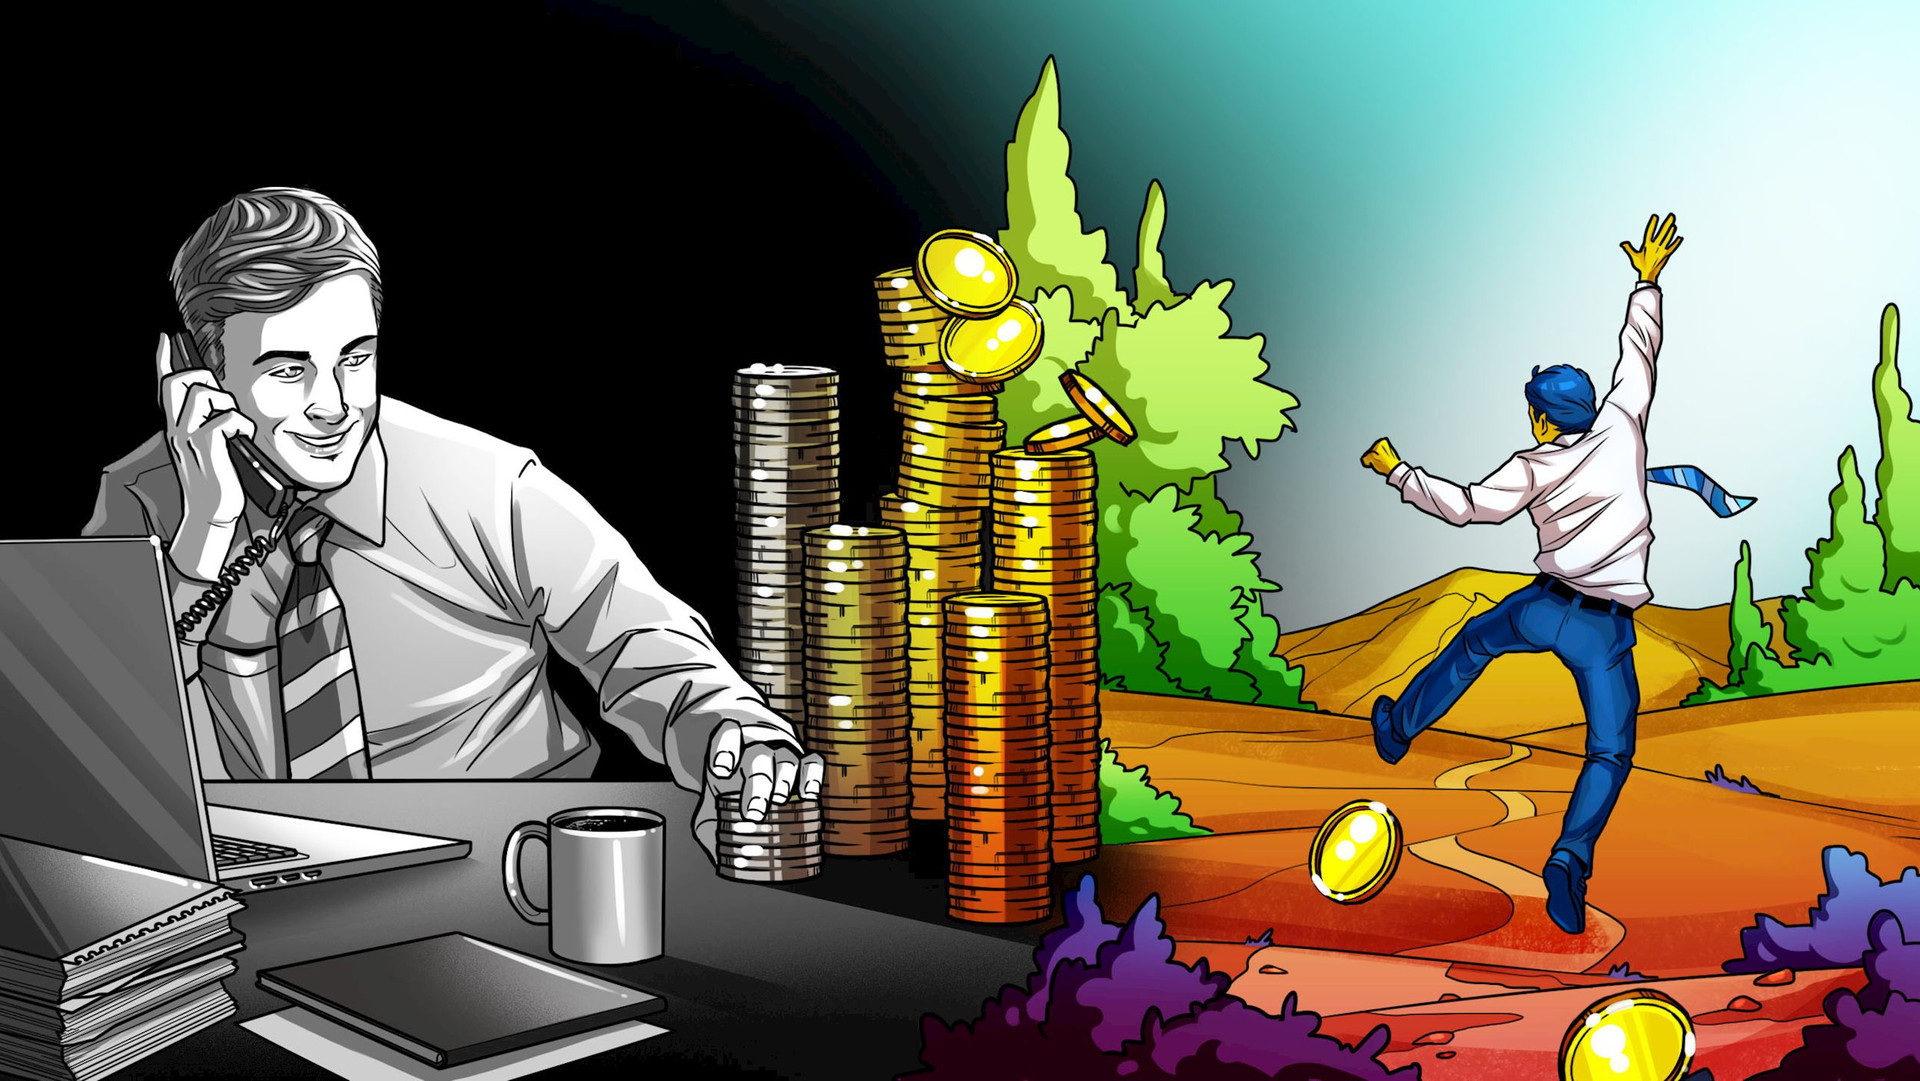 34 tuổi nghỉ hưu với 71 tỷ đồng, người đàn ông tiết lộ: Tiết kiệm từng cốc cà phê là ‘thất sách’, muốn làm giàu phải nắm được tư duy ‘tiền đẻ ra tiền’